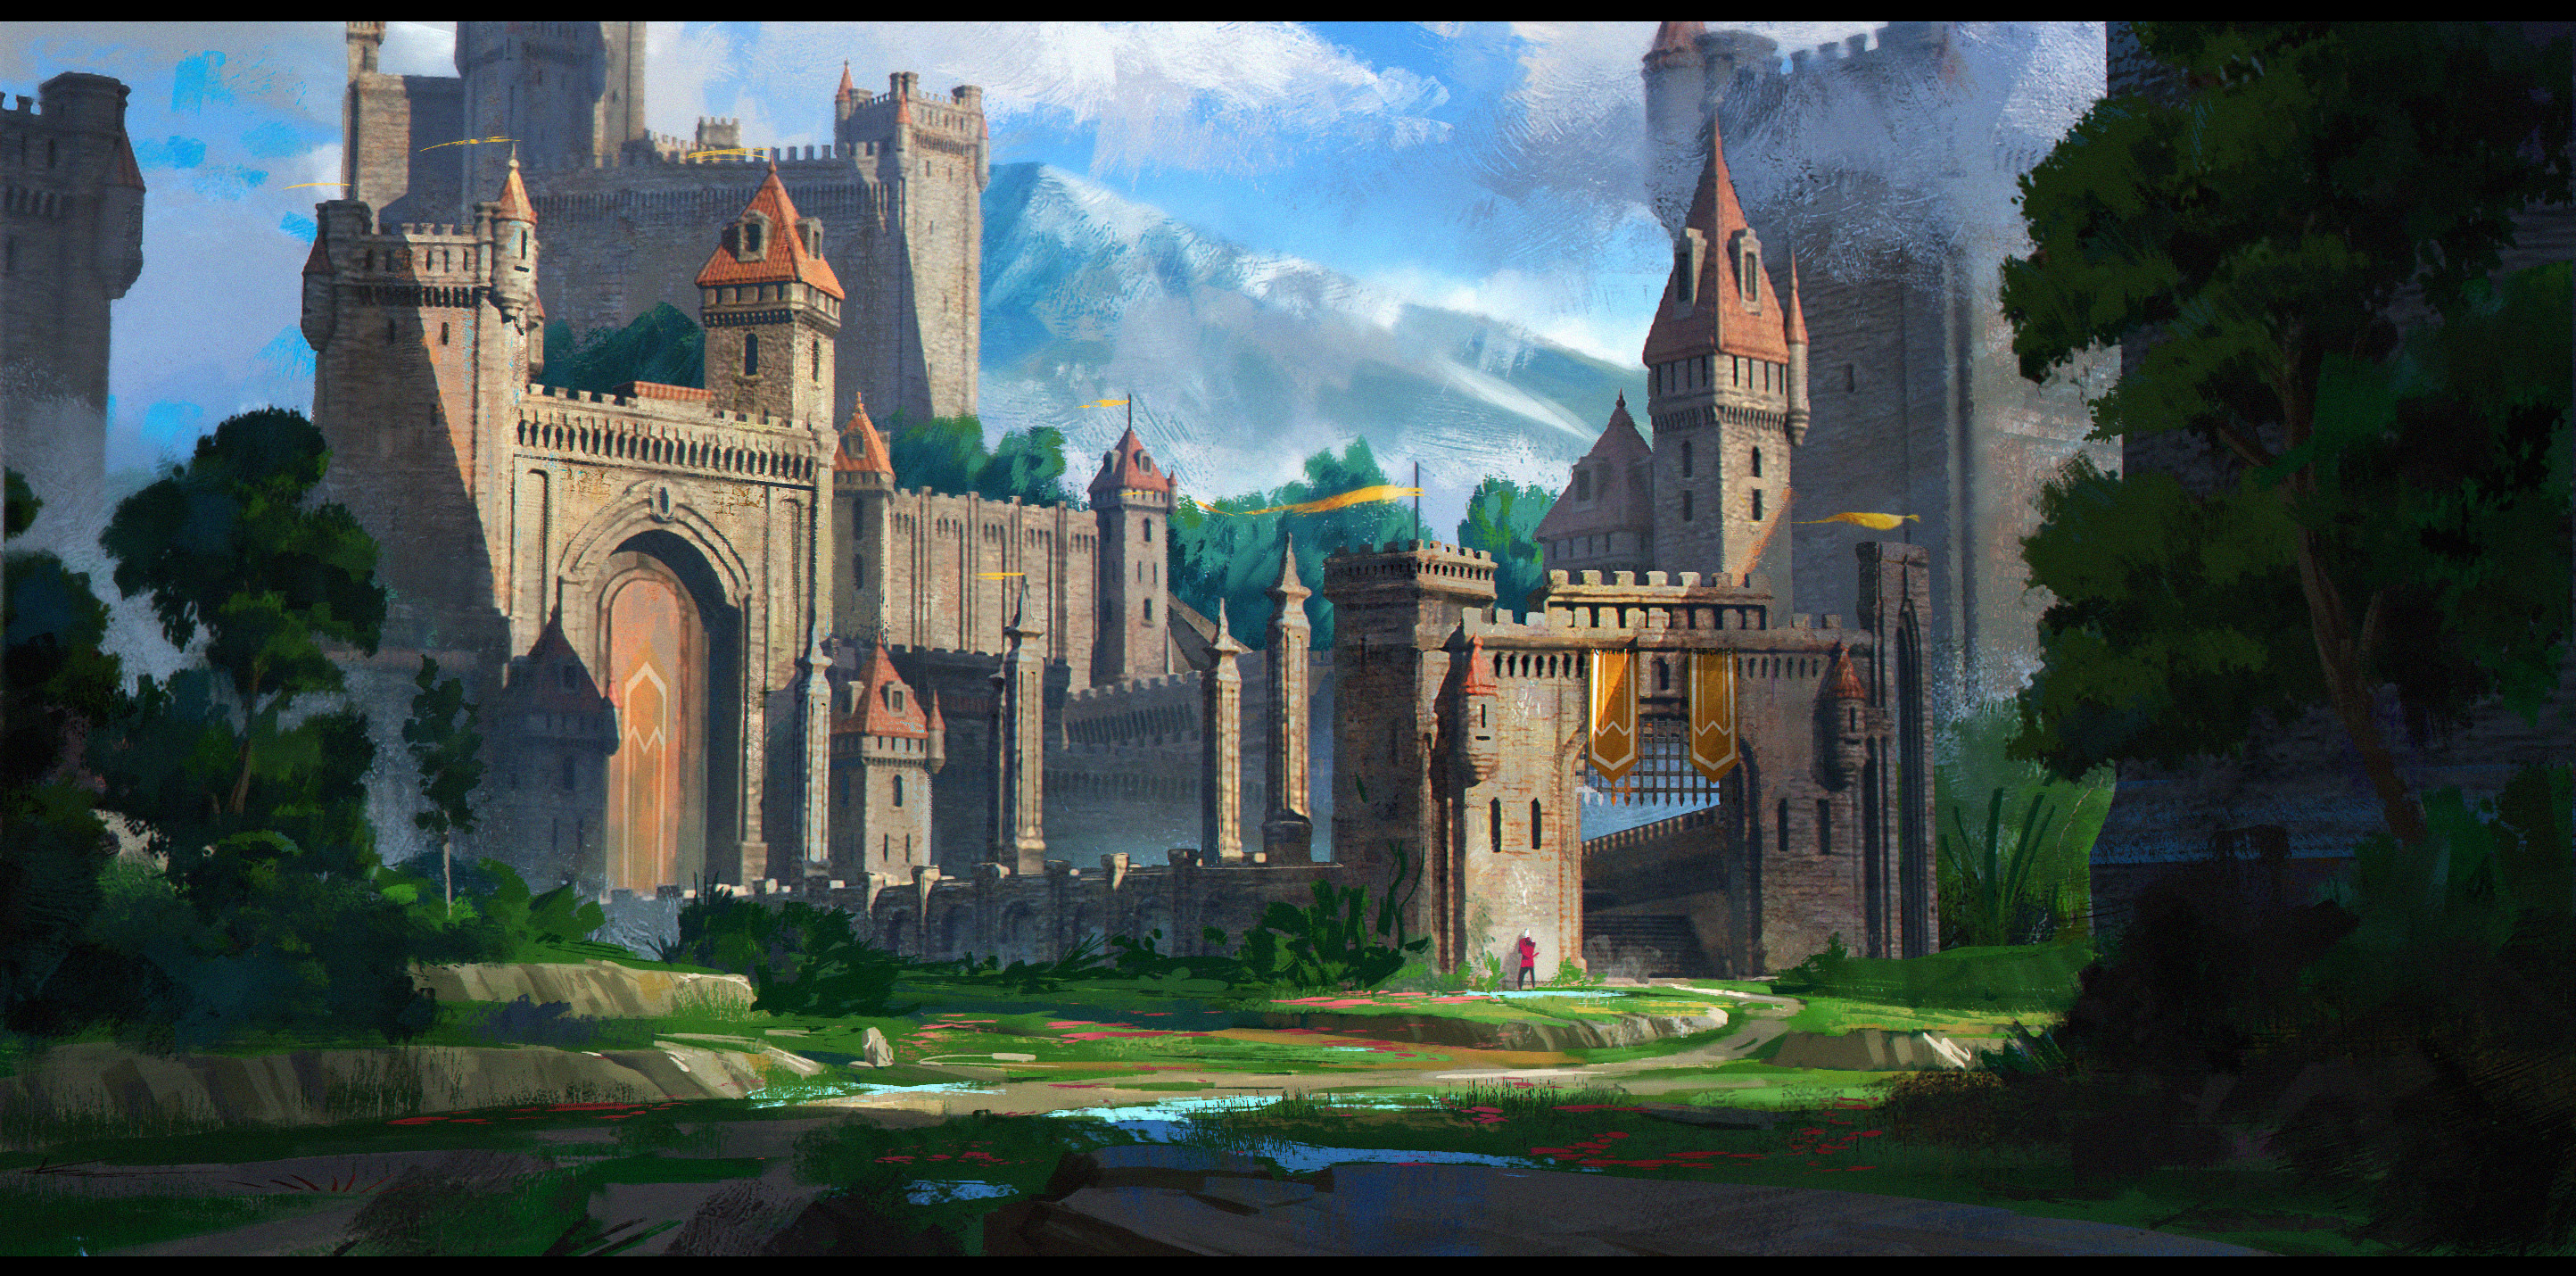 https://cdna.artstation.com/p/assets/images/images/020/326/156/4k/jonathan-dufresne-medieval-castle.jpg?1567354445